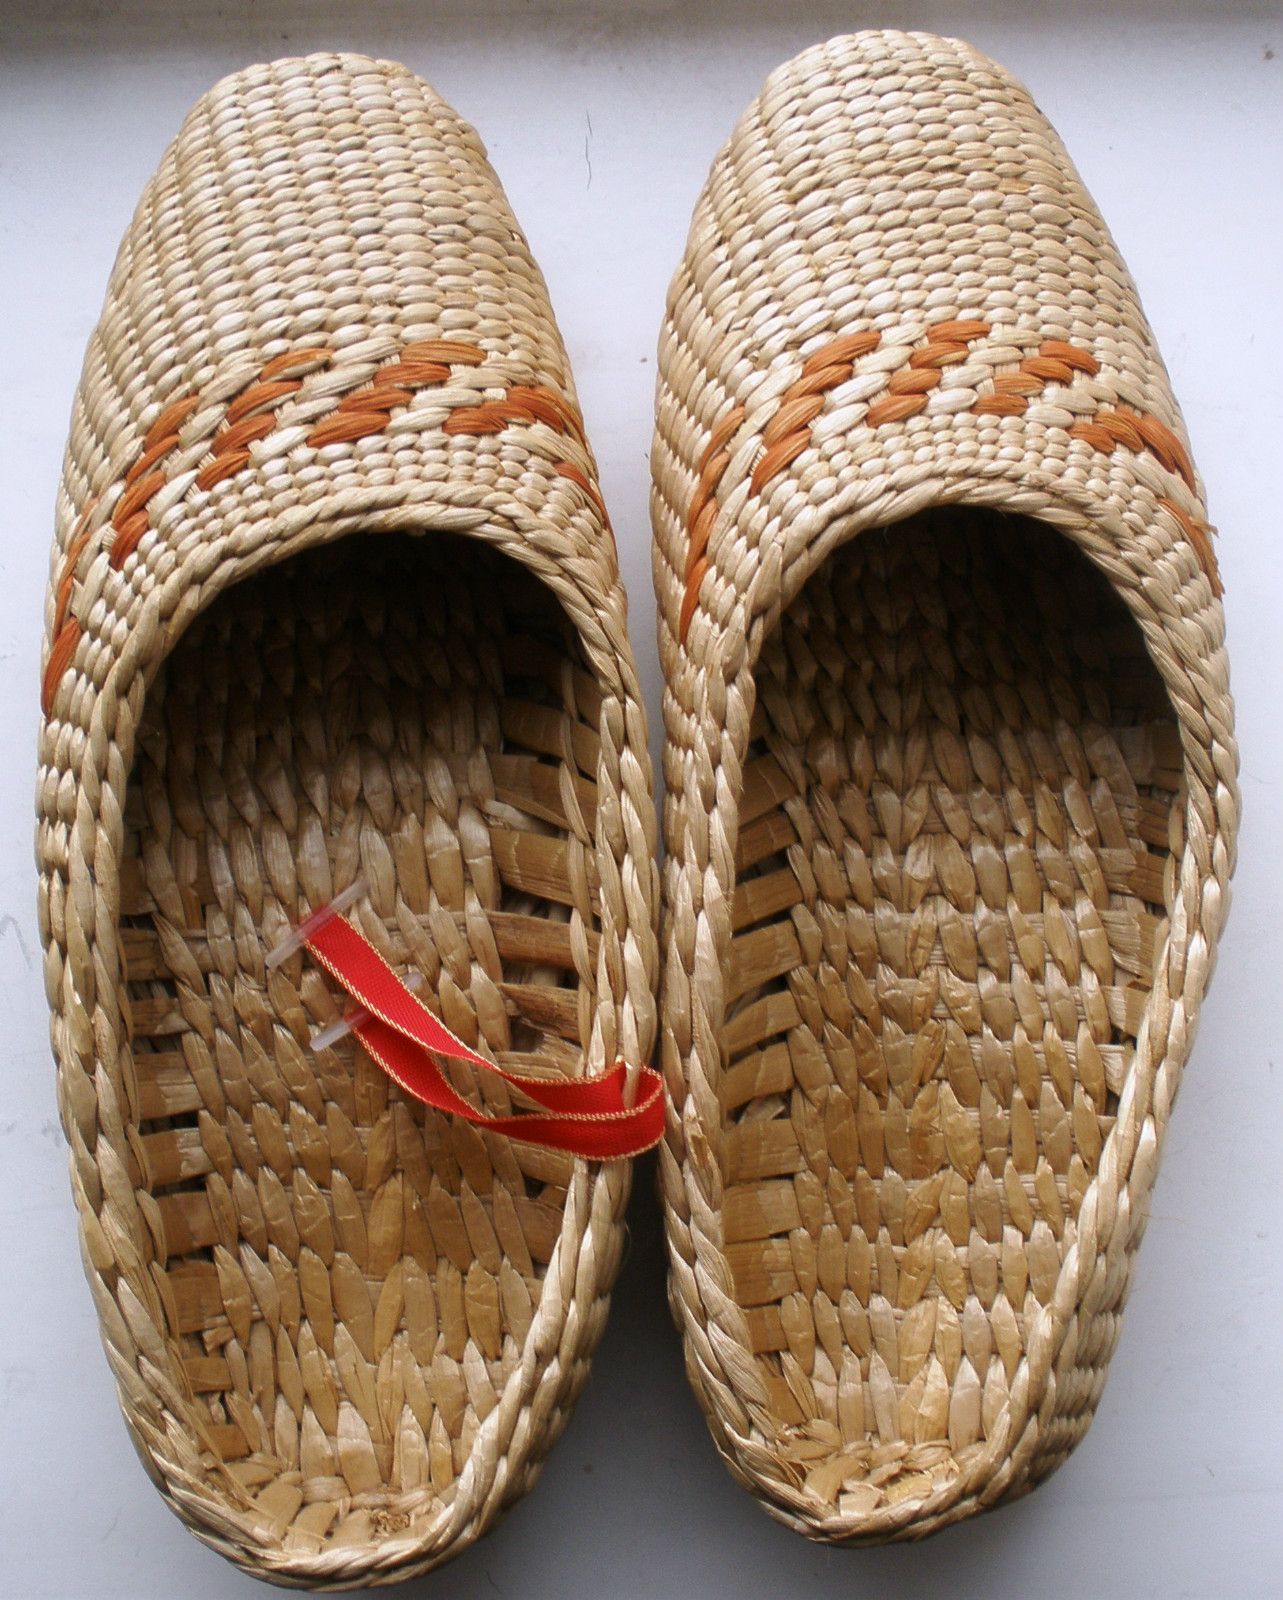 Russian Bast Shoes 'Lapti' - National Ethnic Souvenir Big Size ...